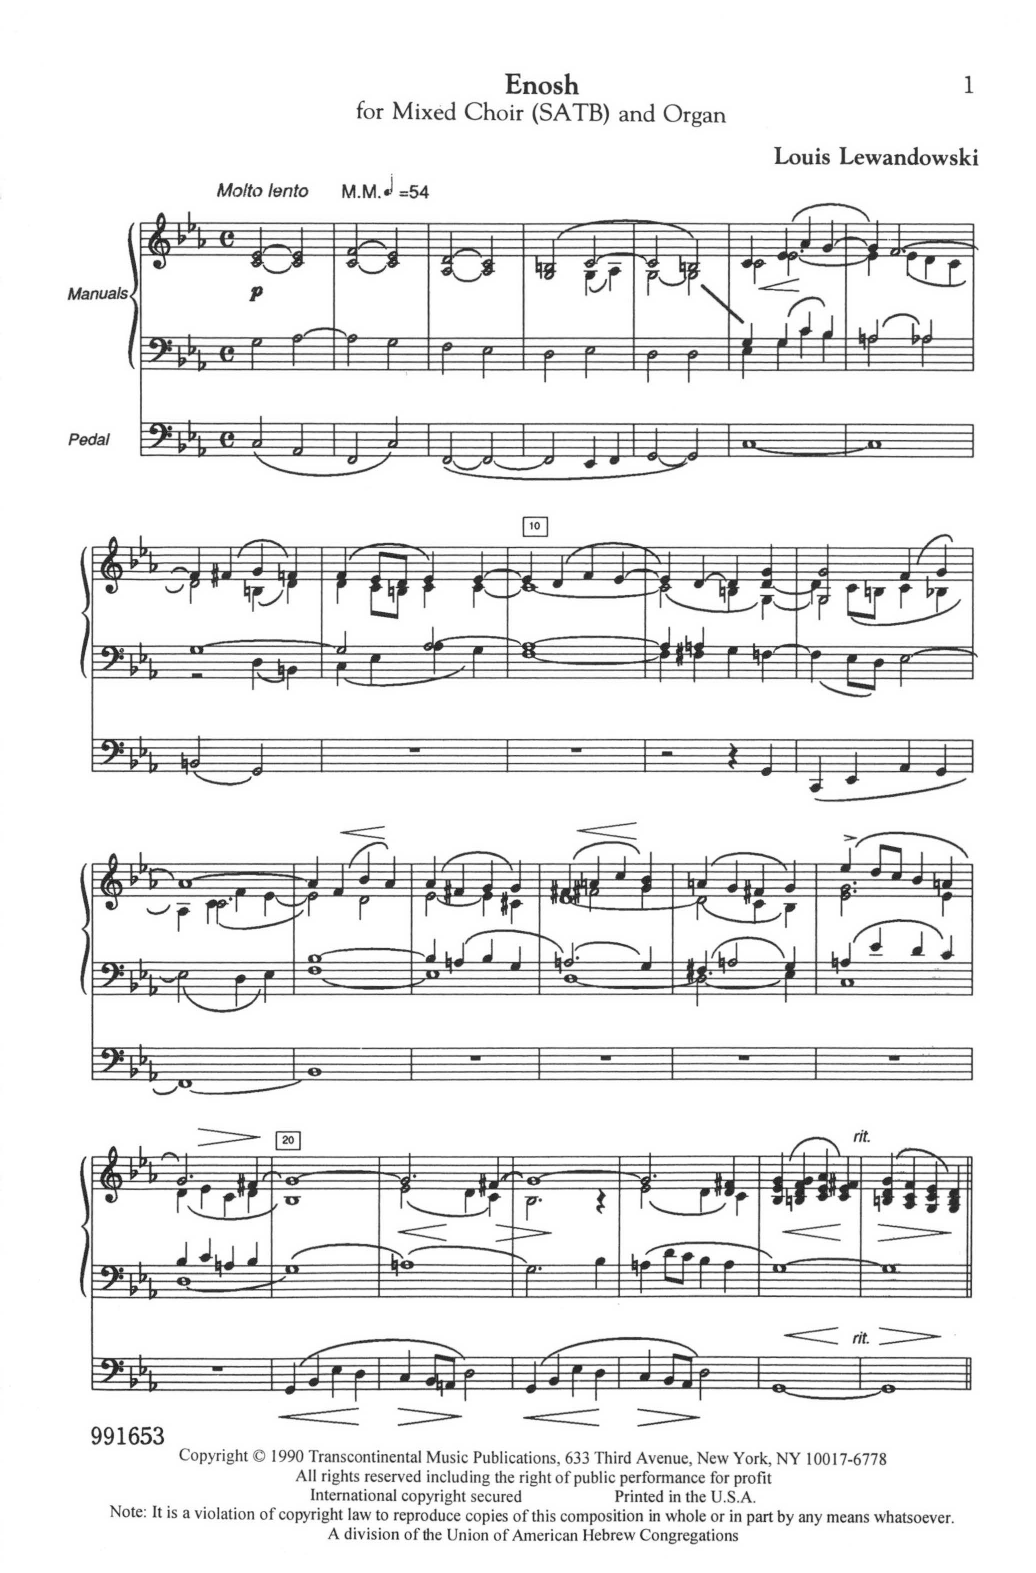 Louis Lewandowski Enosh Sheet Music Notes & Chords for SATB Choir - Download or Print PDF